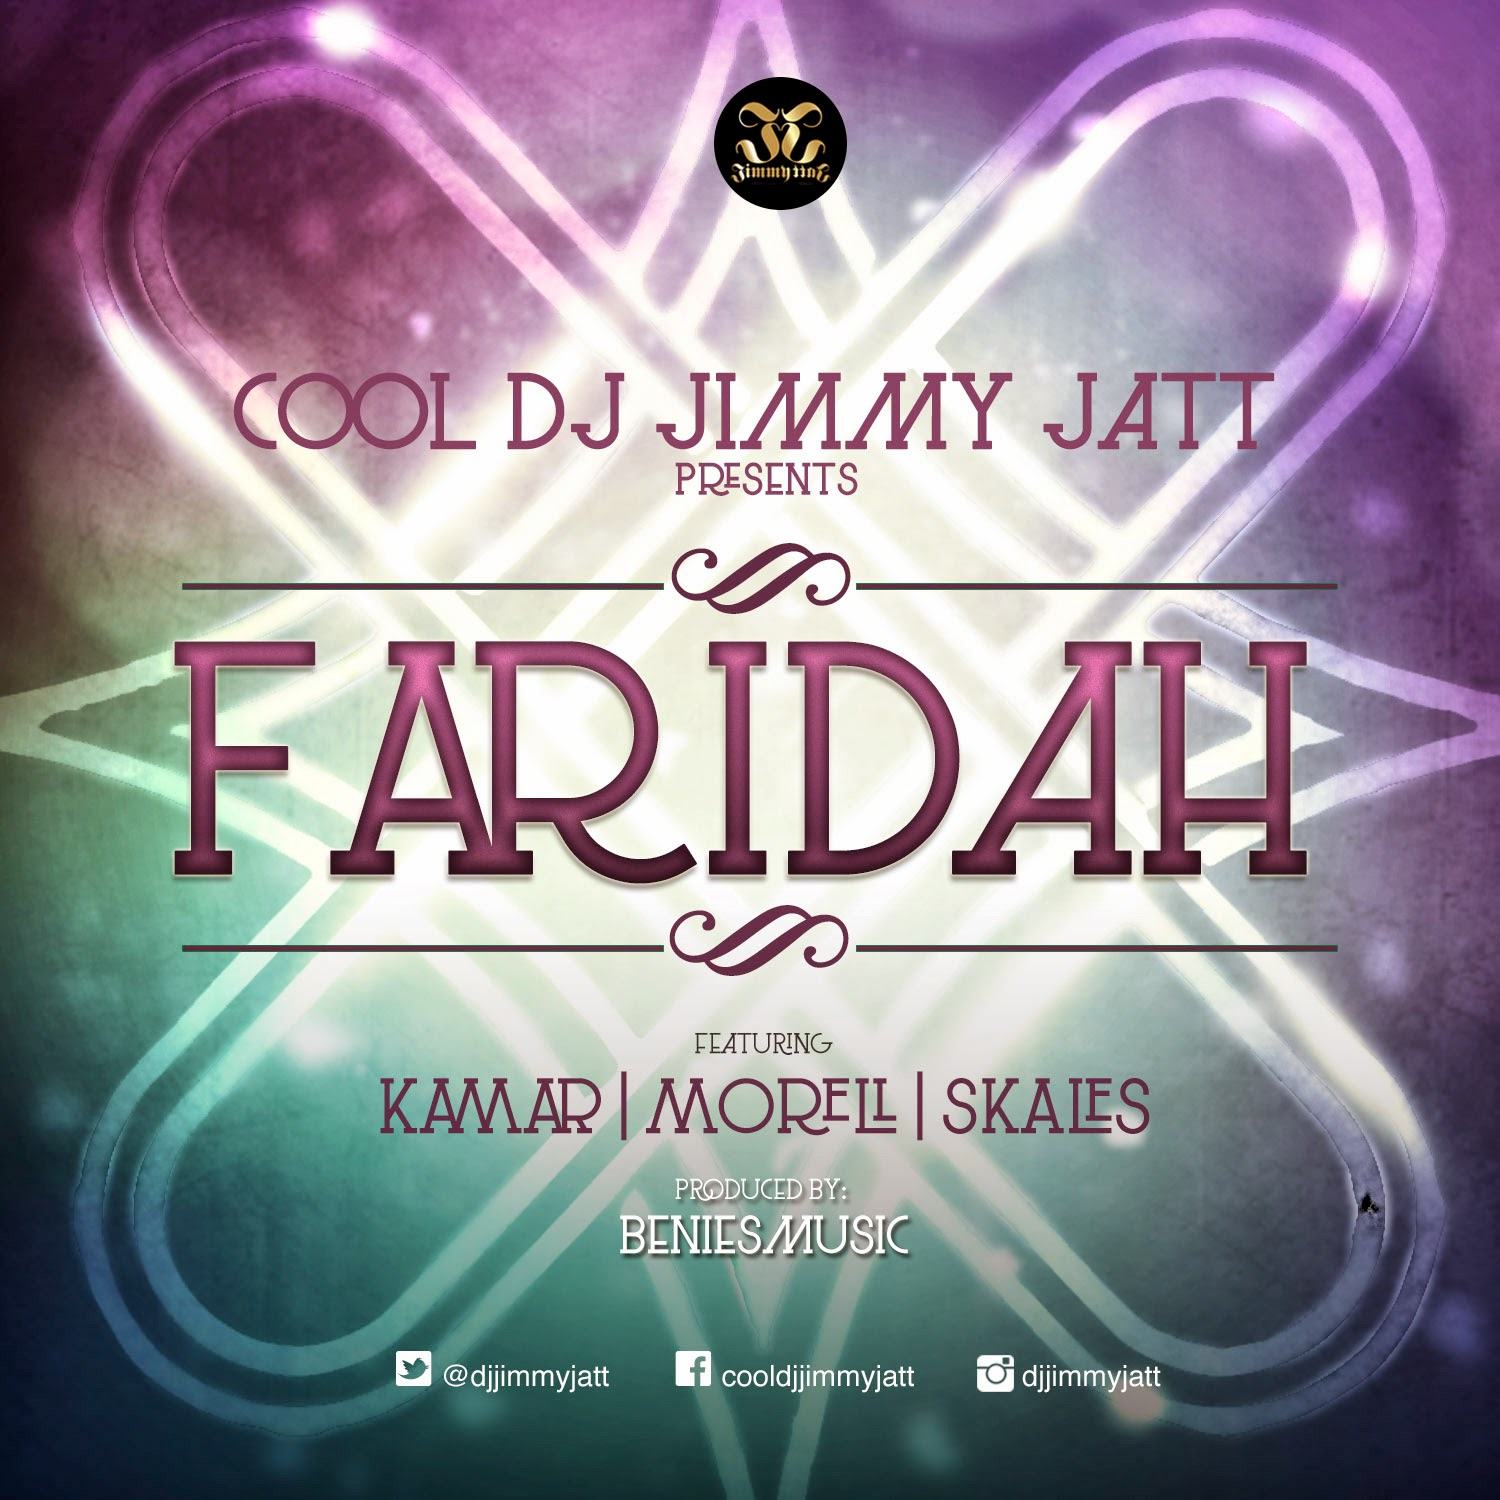 DJ Jimmy Jatt – Faridah ft Kamar, Morell & Skales [AuDio]